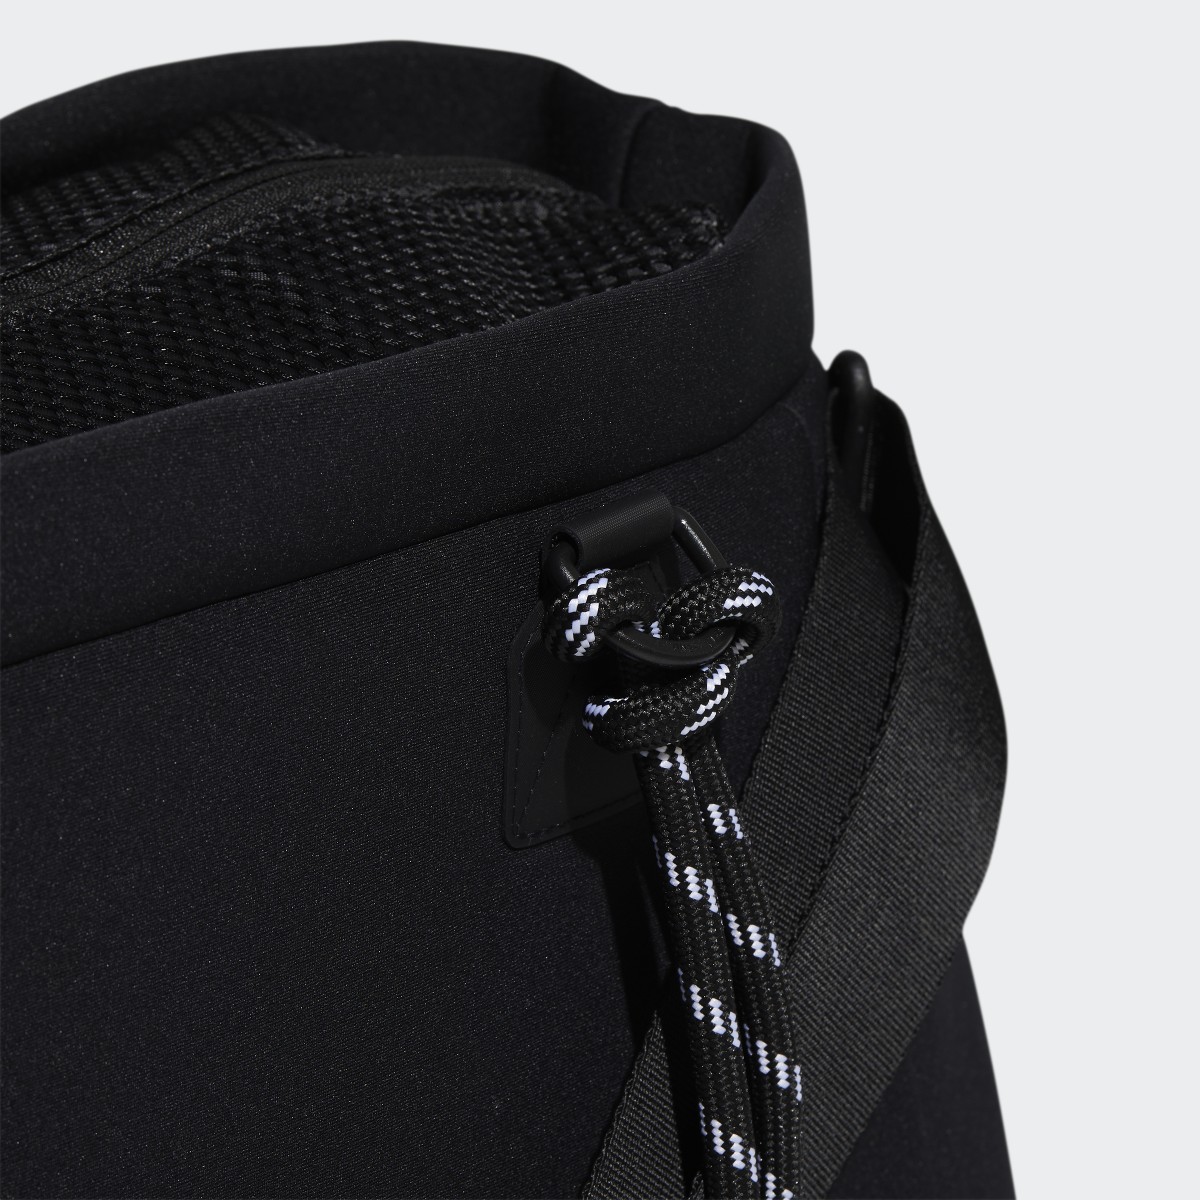 Adidas Favorites Duffel Bag. 7